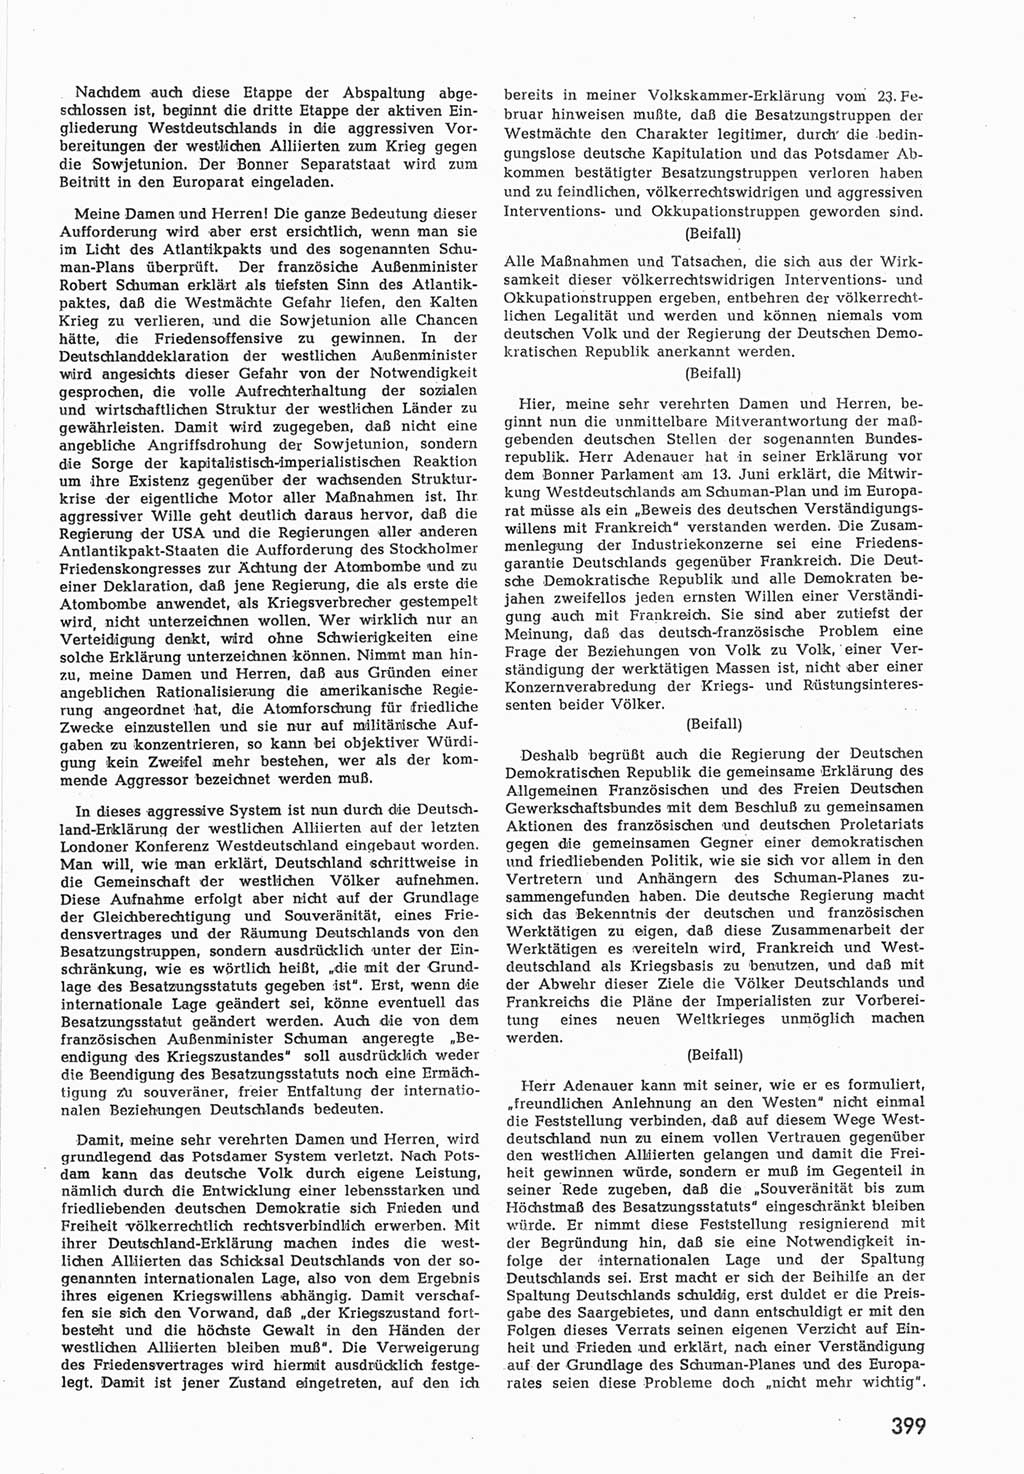 Provisorische Volkskammer (VK) der Deutschen Demokratischen Republik (DDR) 1949-1950, Dokument 417 (Prov. VK DDR 1949-1950, Dok. 417)